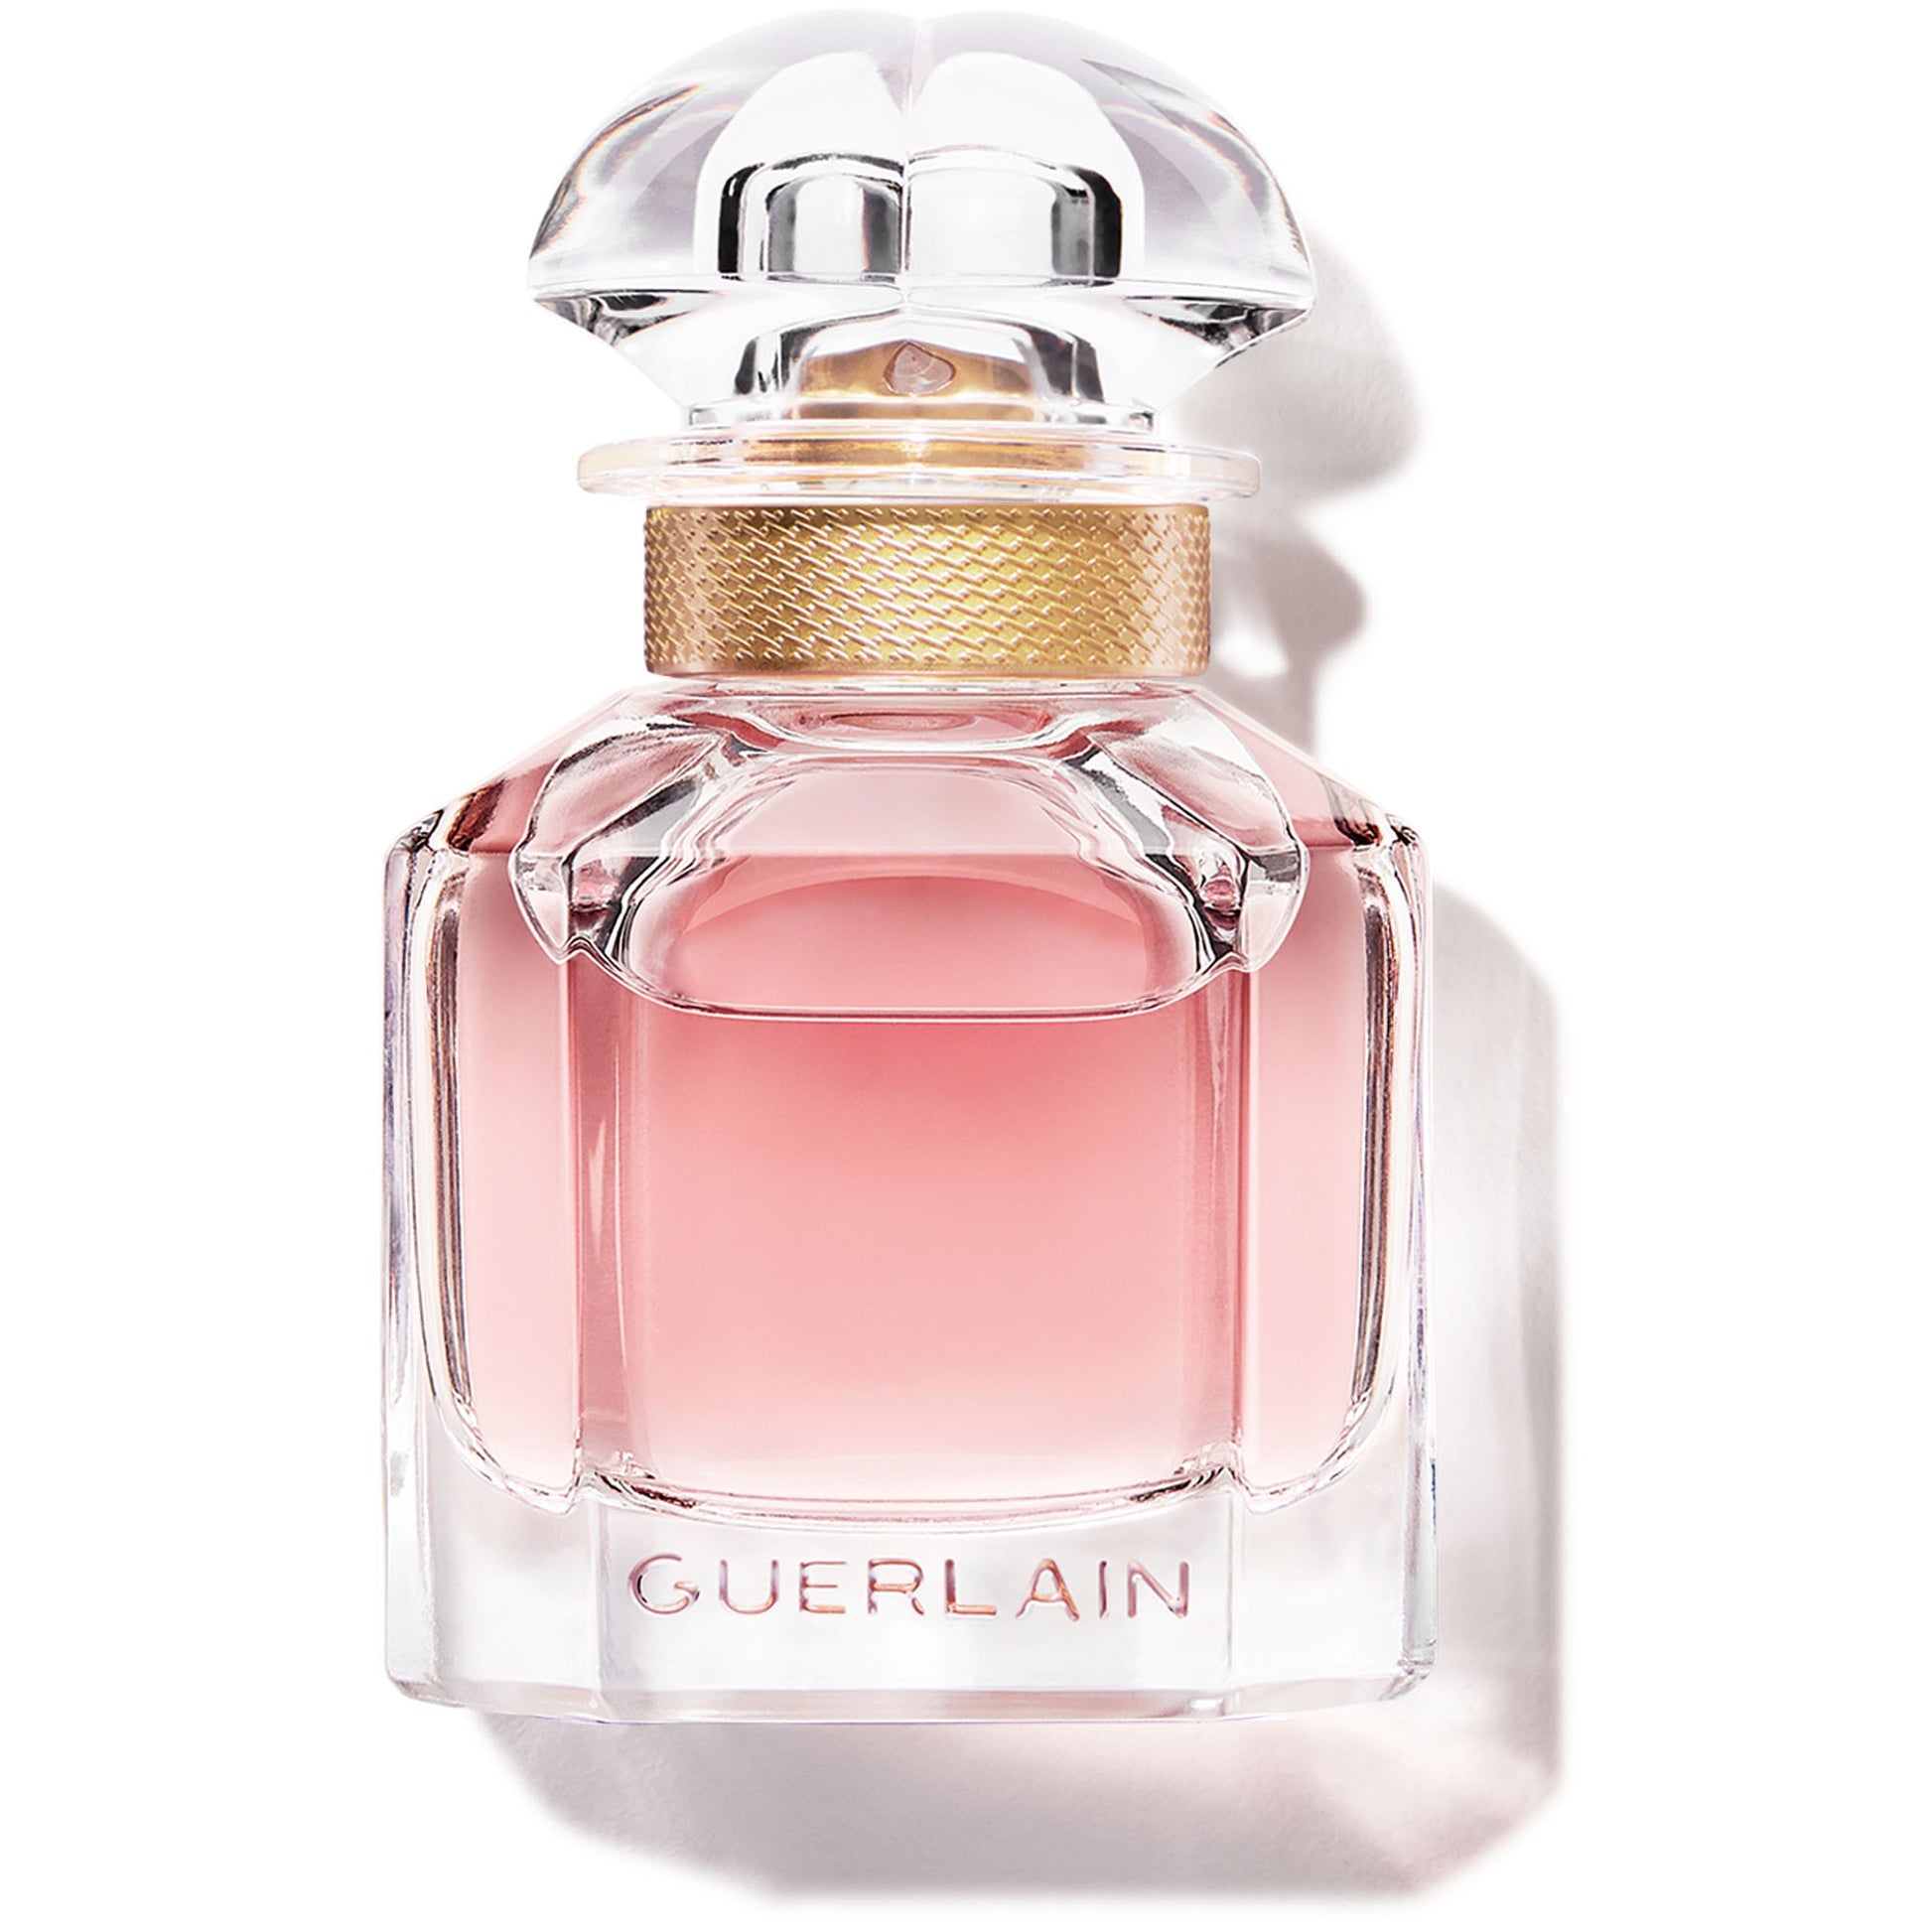 Mon Guerlain - Perfumería First Bolivia